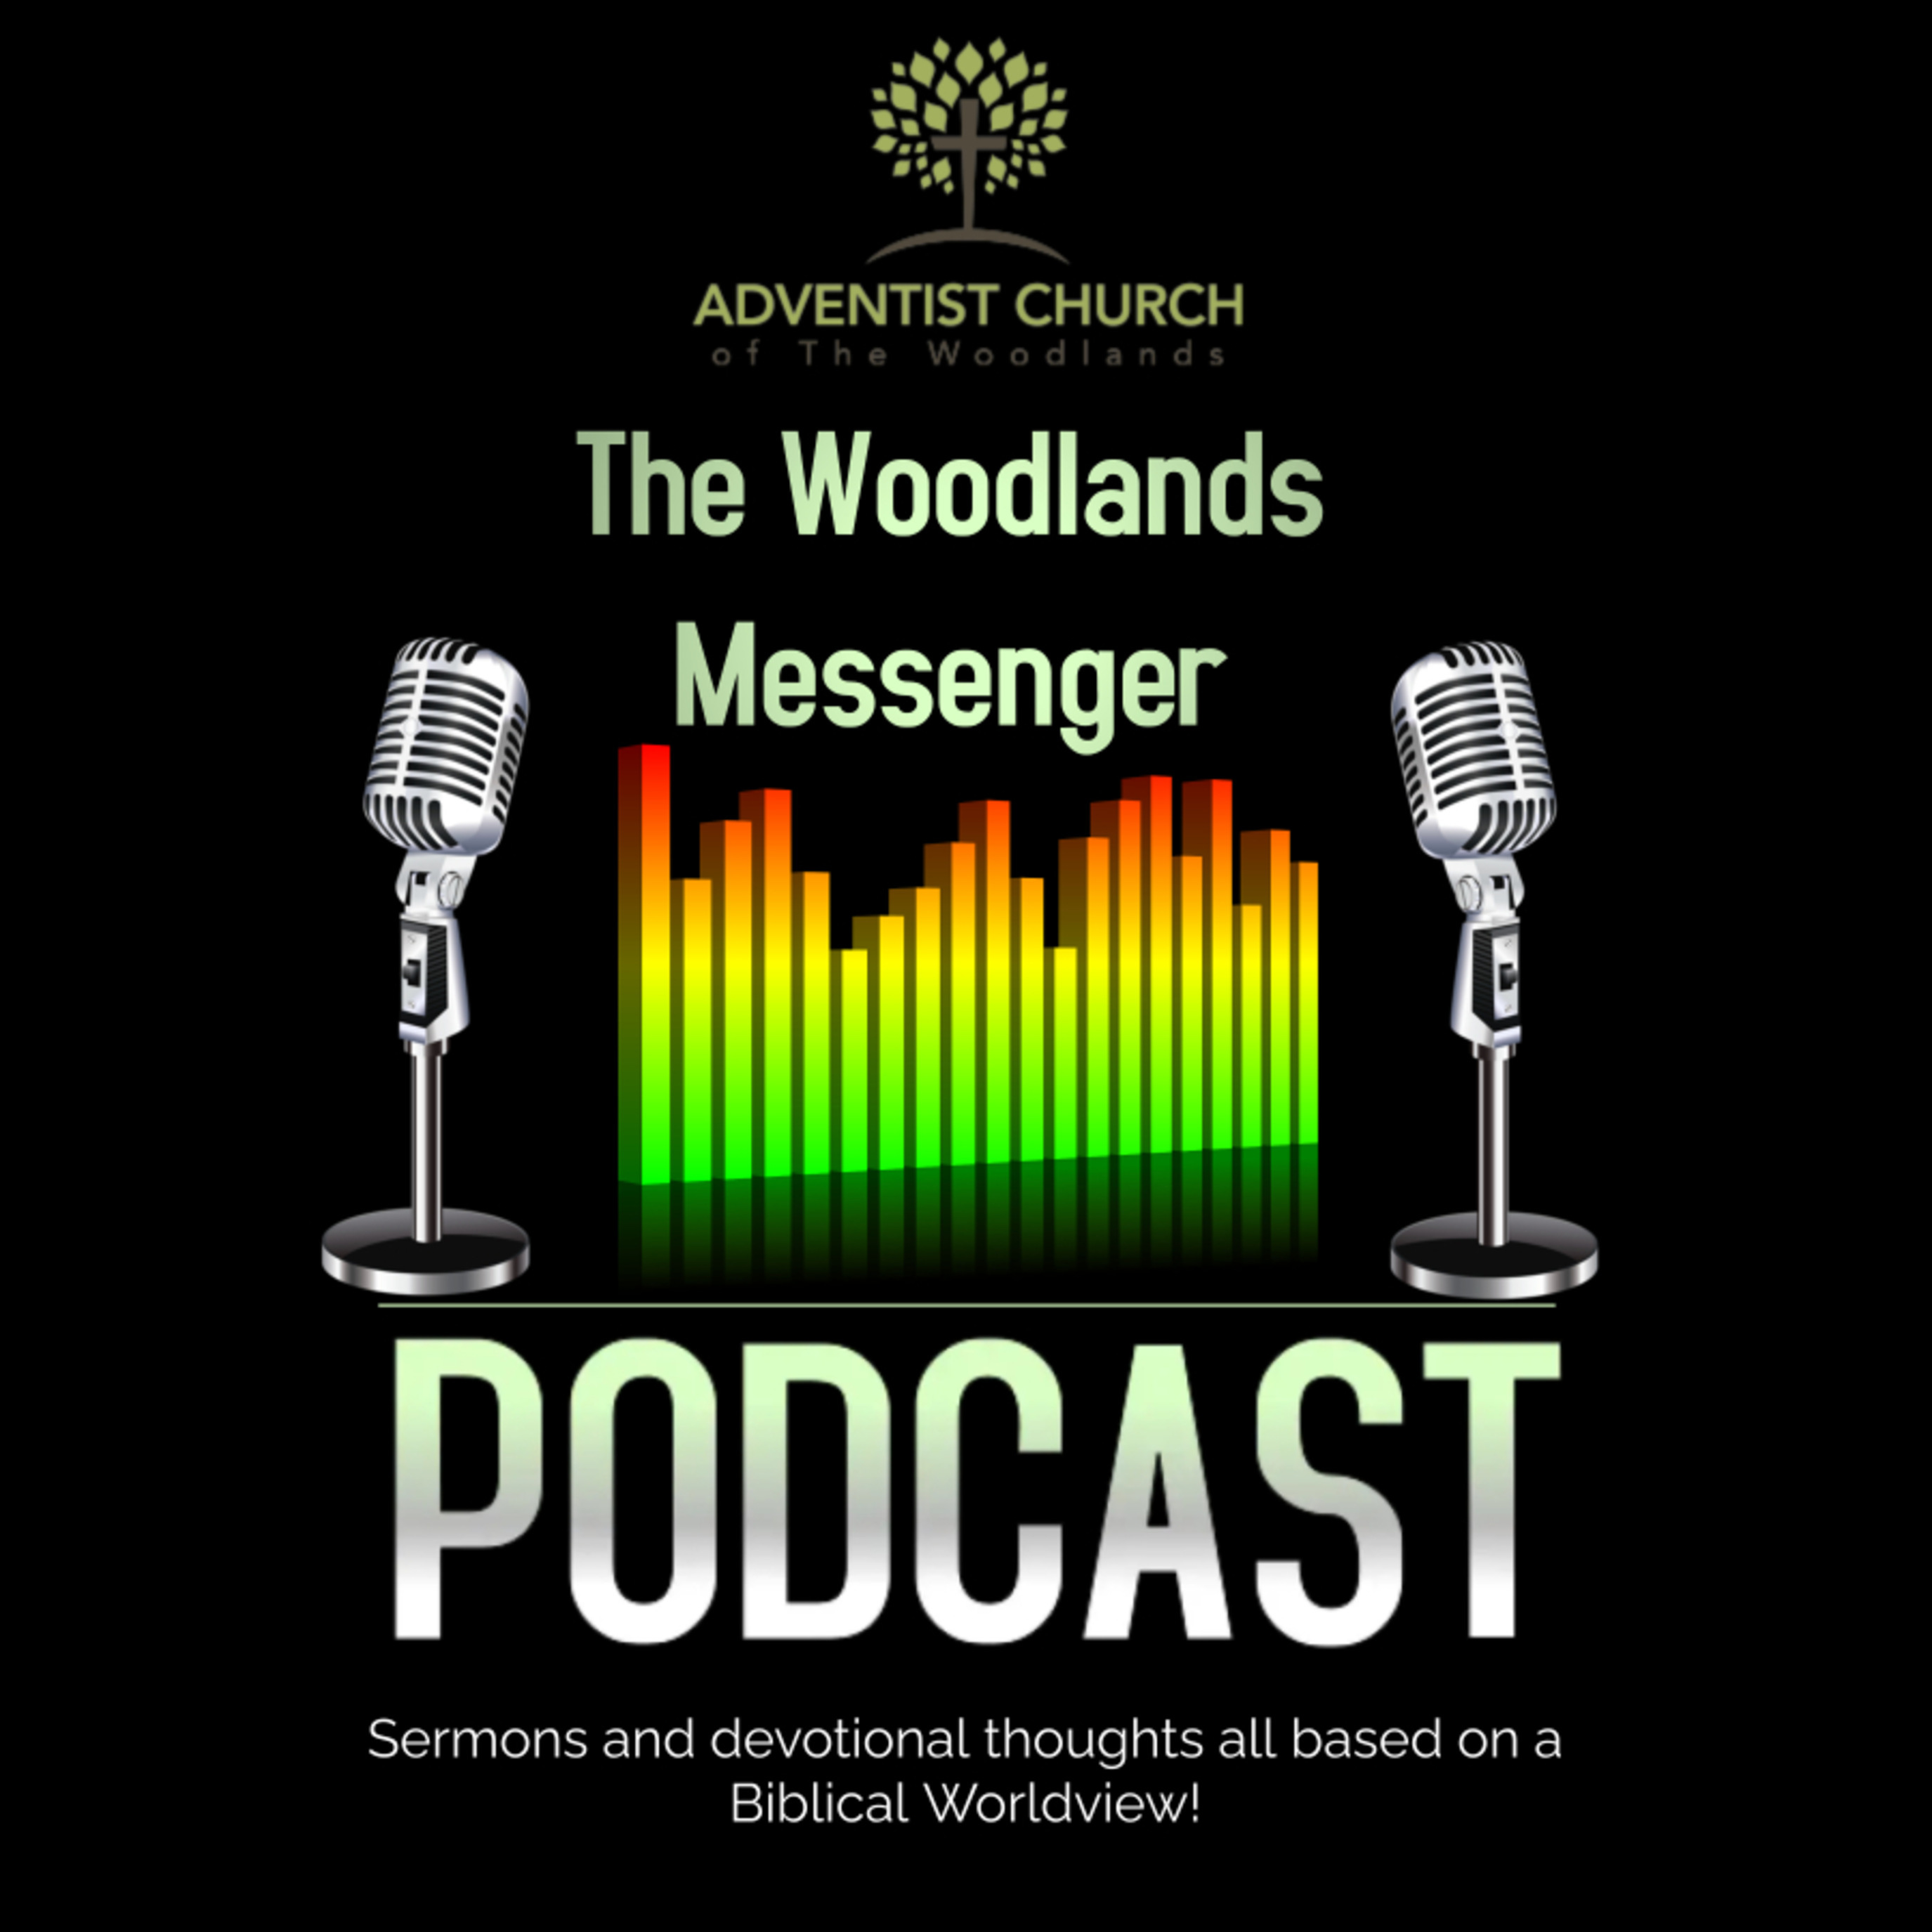 The Woodlands Messenger